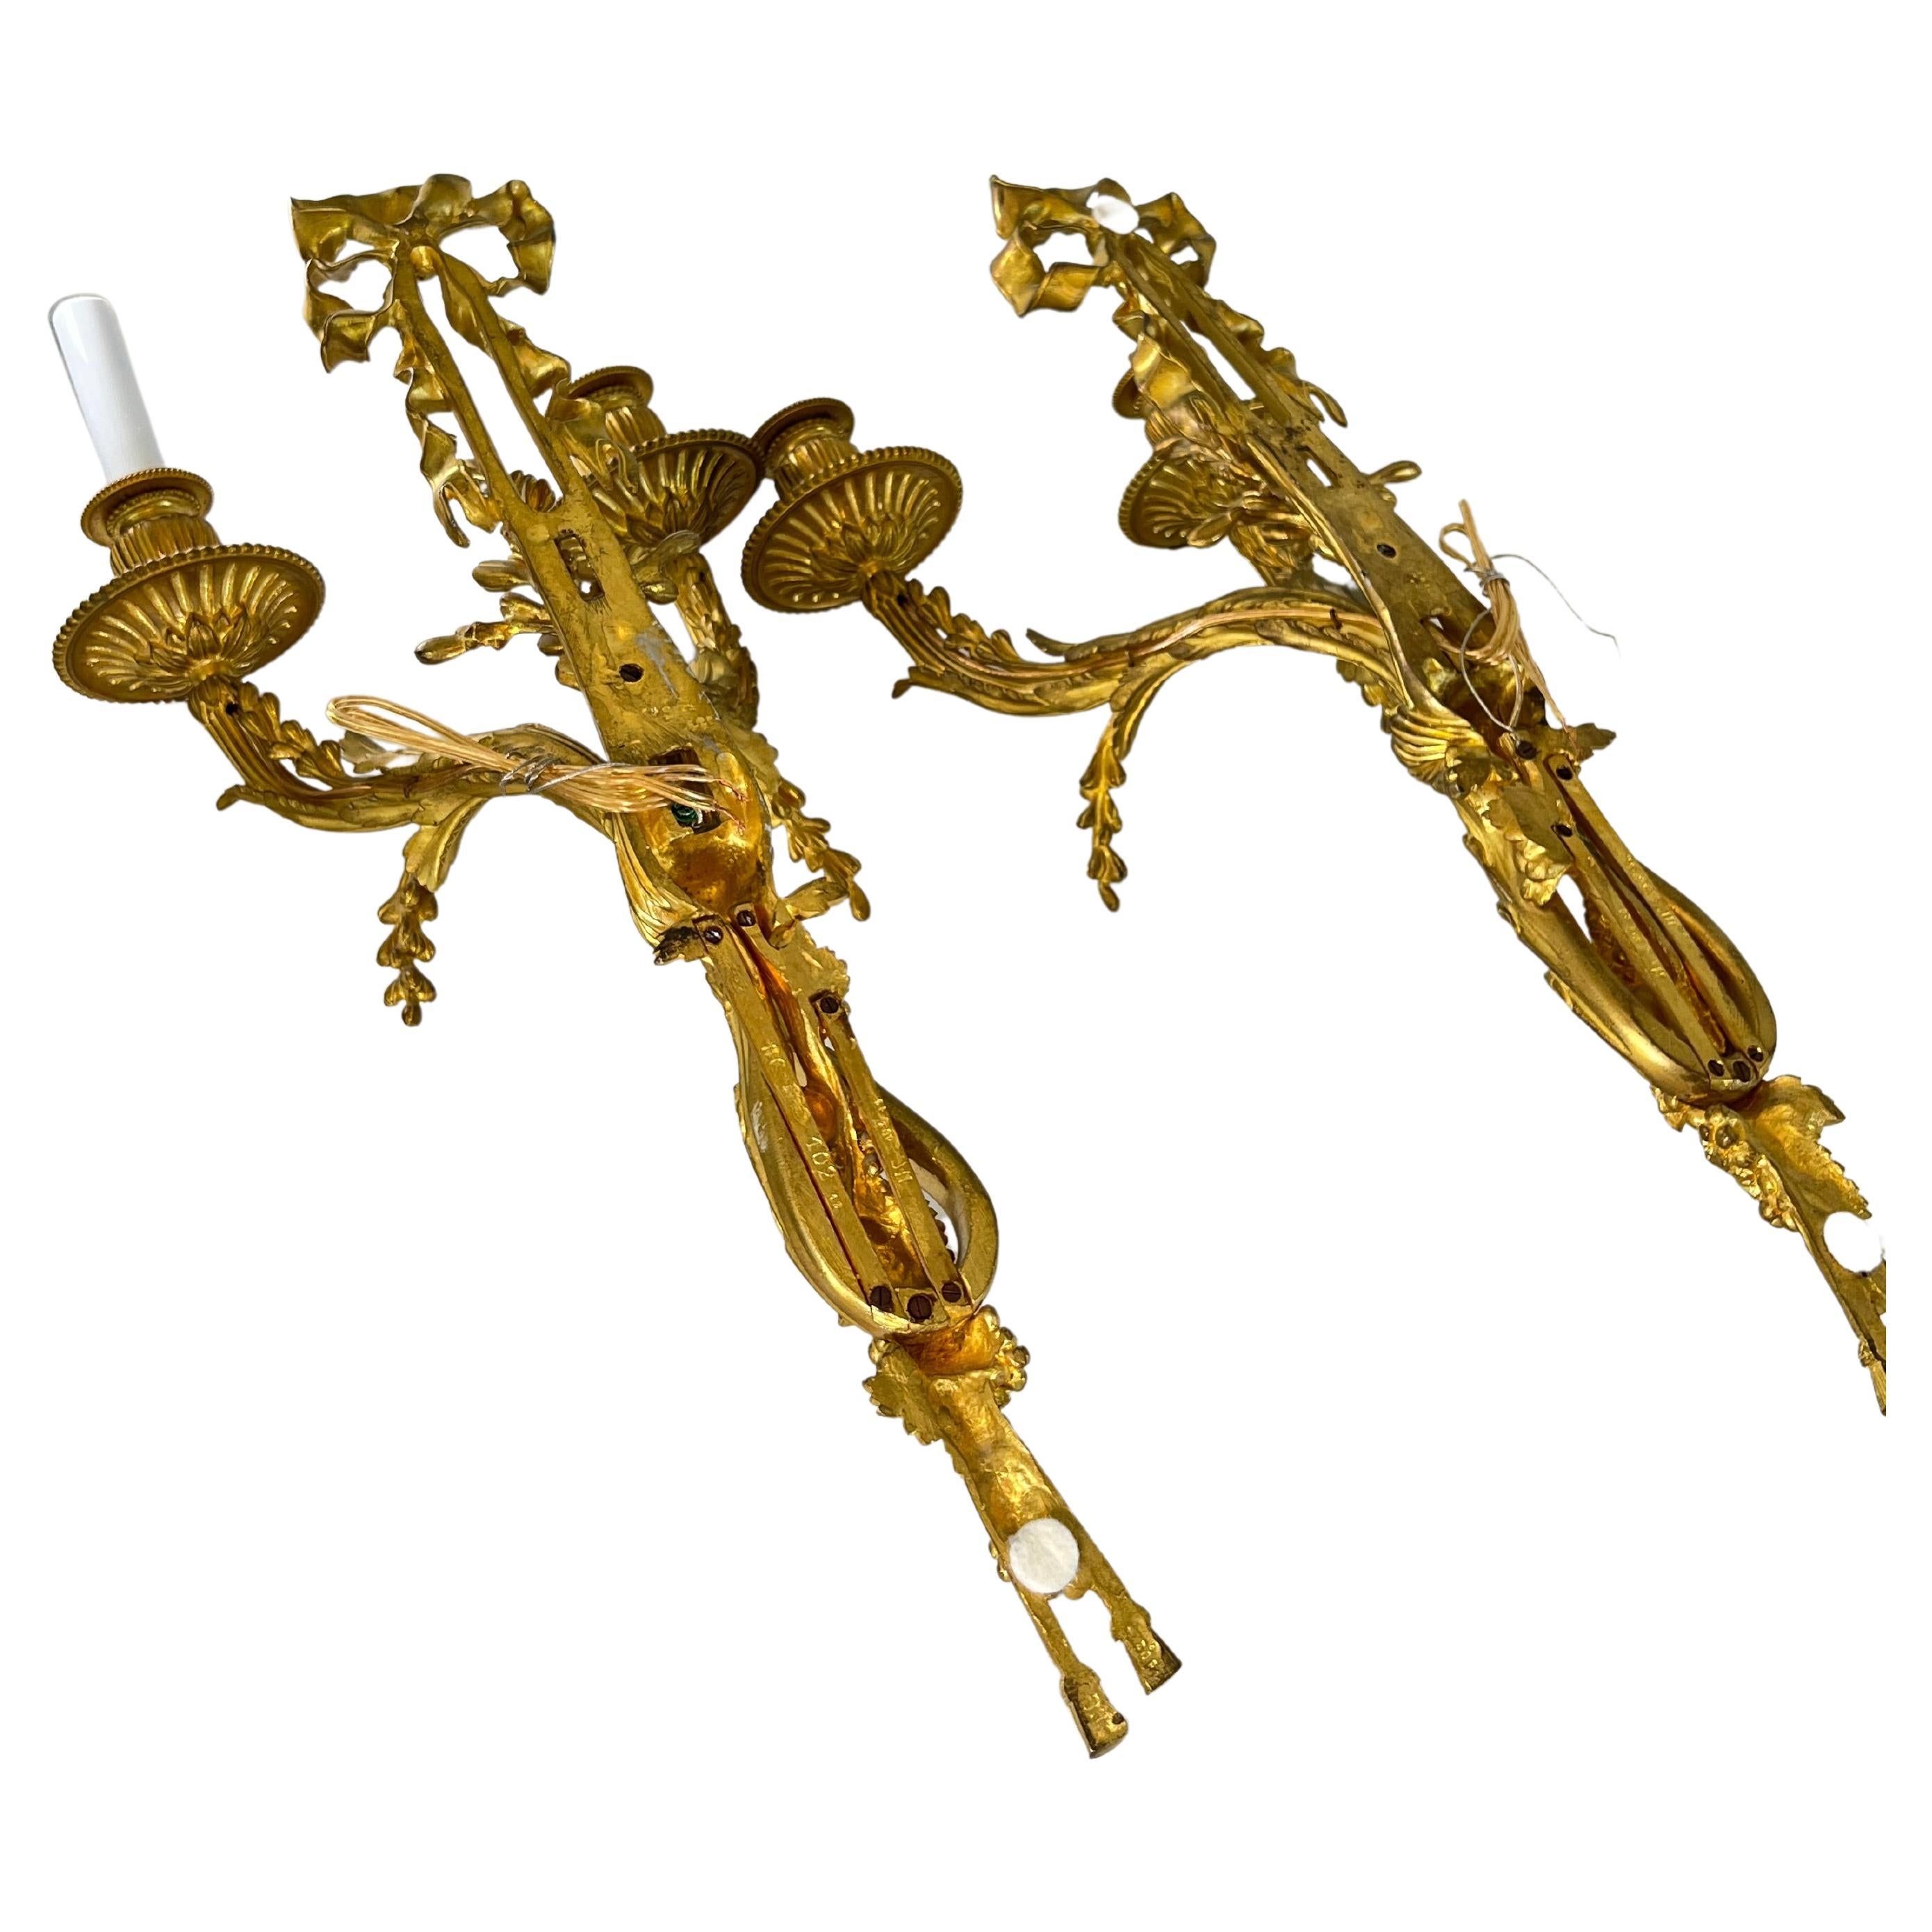 Rare paire d'appliques en bronze mat et doré brillant, finement ciselées. Un imposant ruban noué surplombe les appliques. Un lien noué se trouve au centre, d'où partent deux branches de baies. Les extrémités de l'applique se terminent par deux